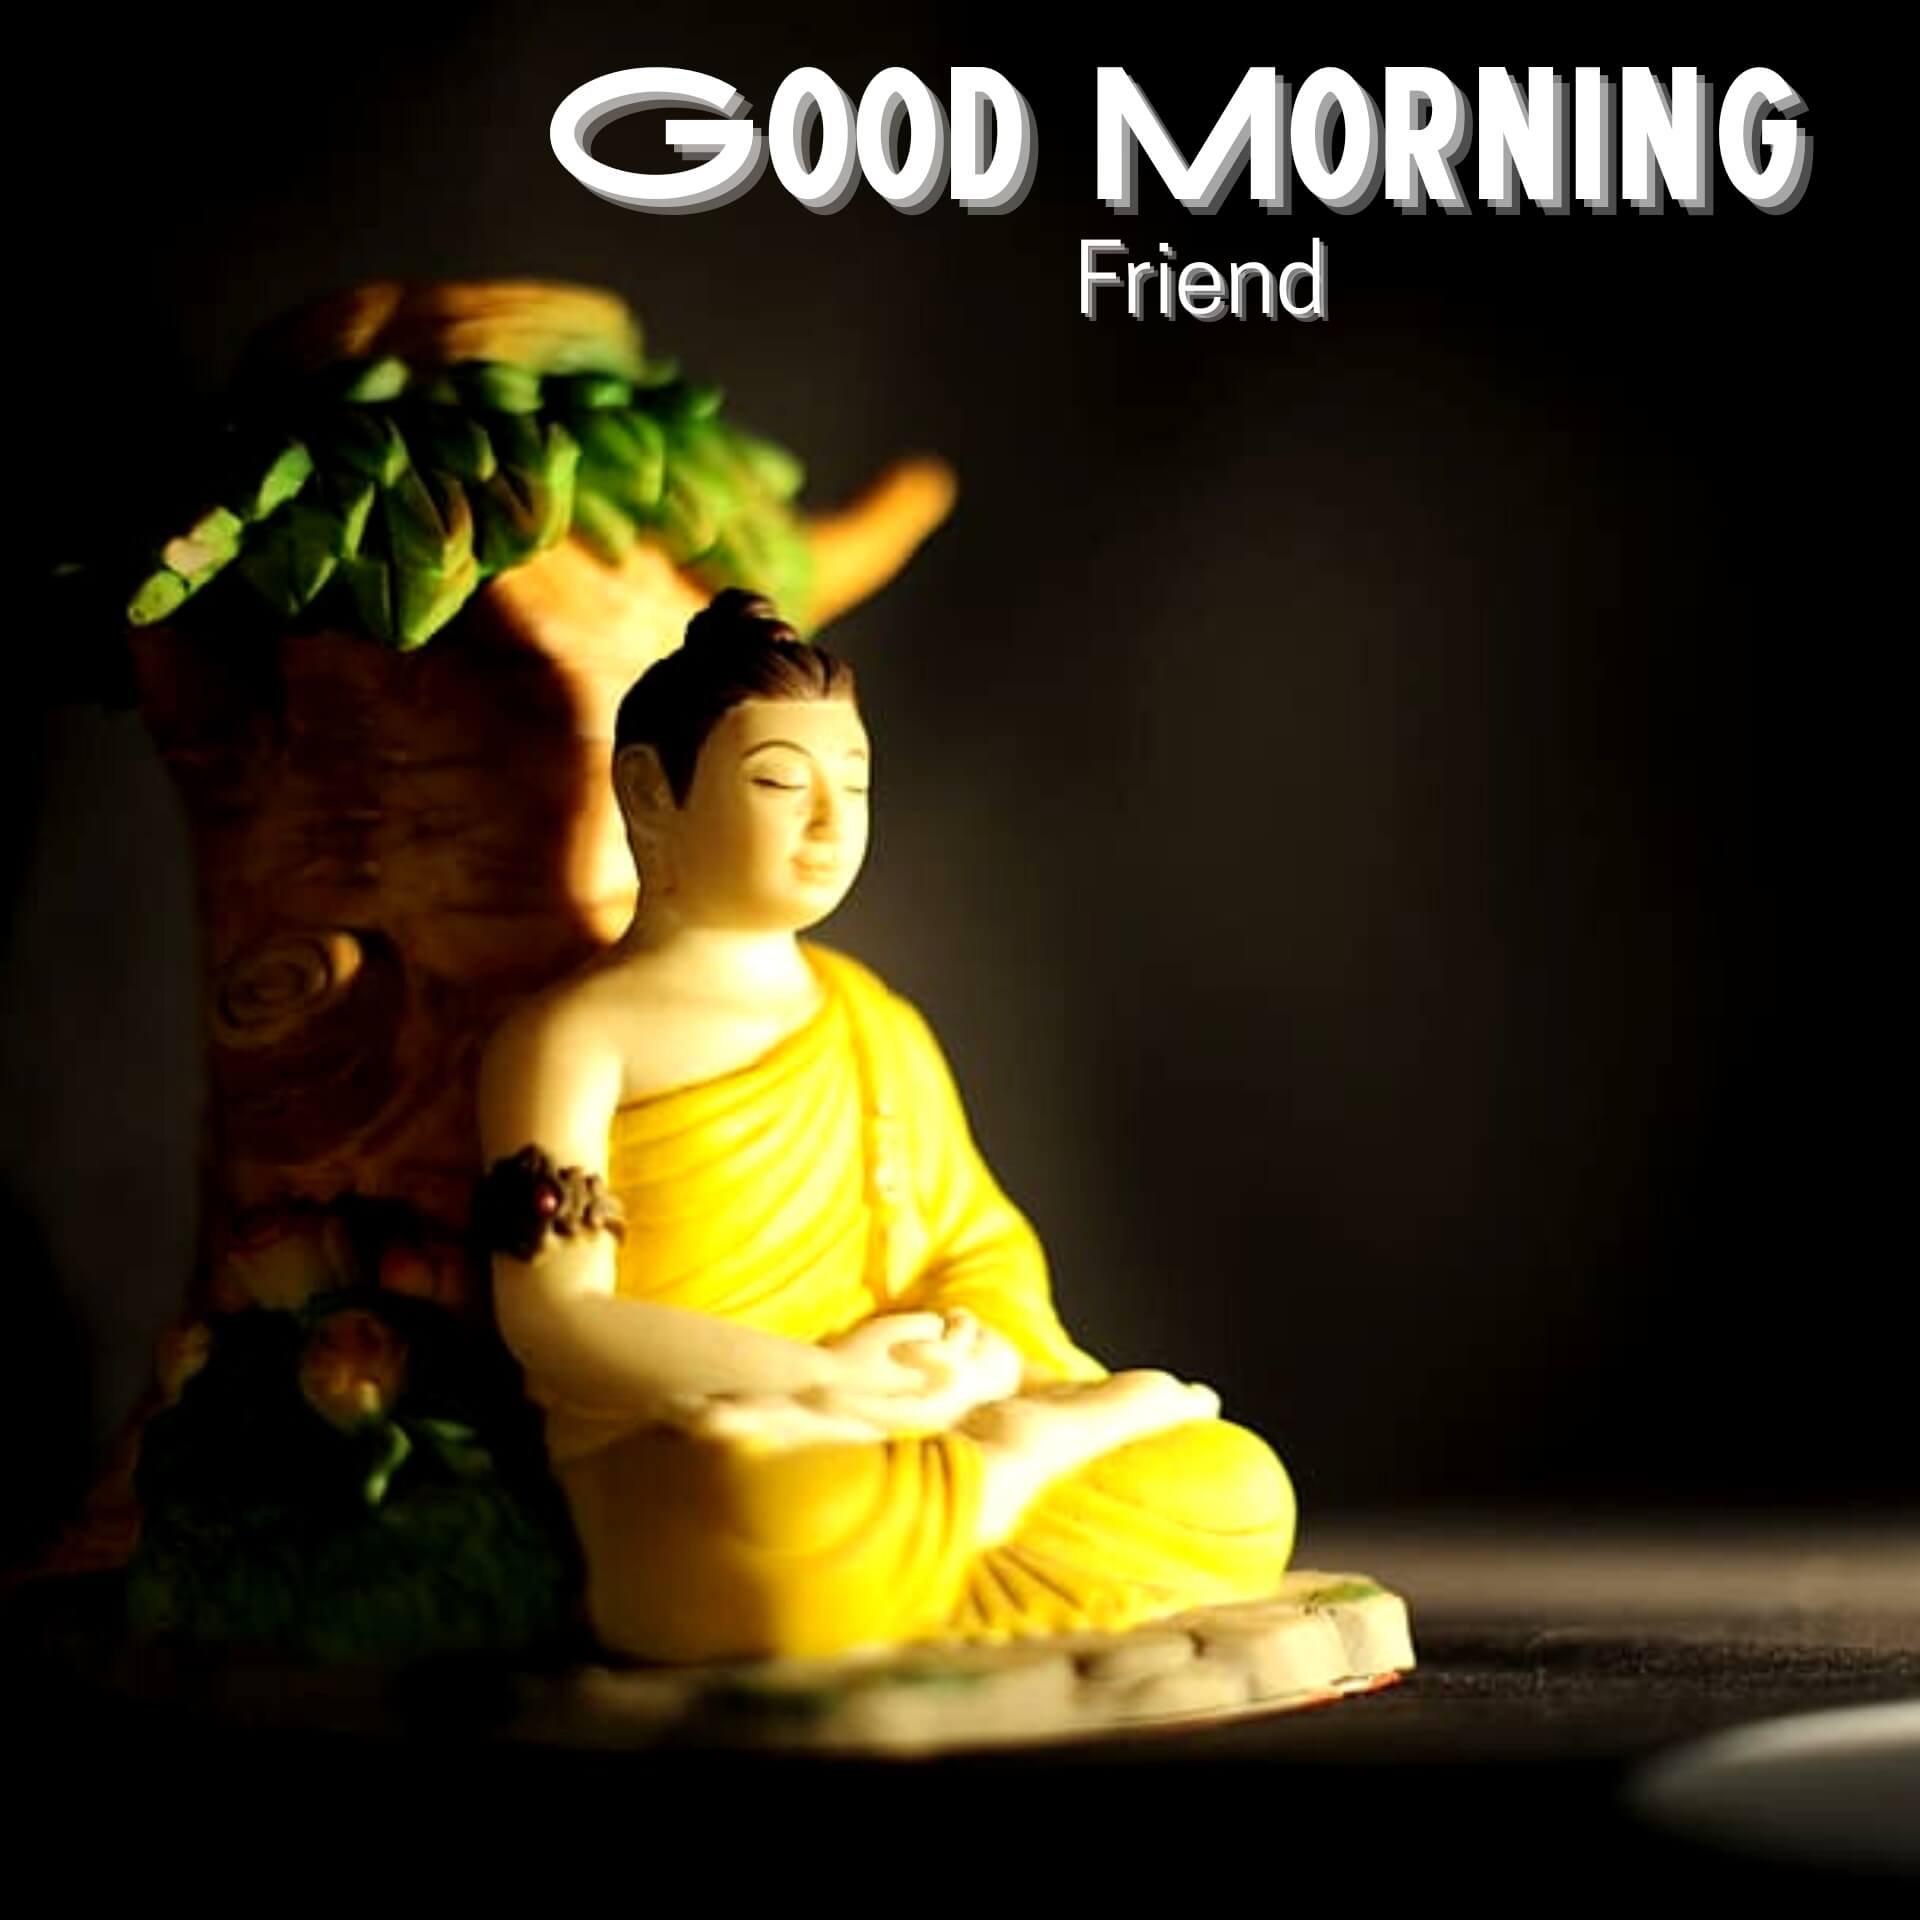 Free HD Gautam Buddha Good Morning Images Download